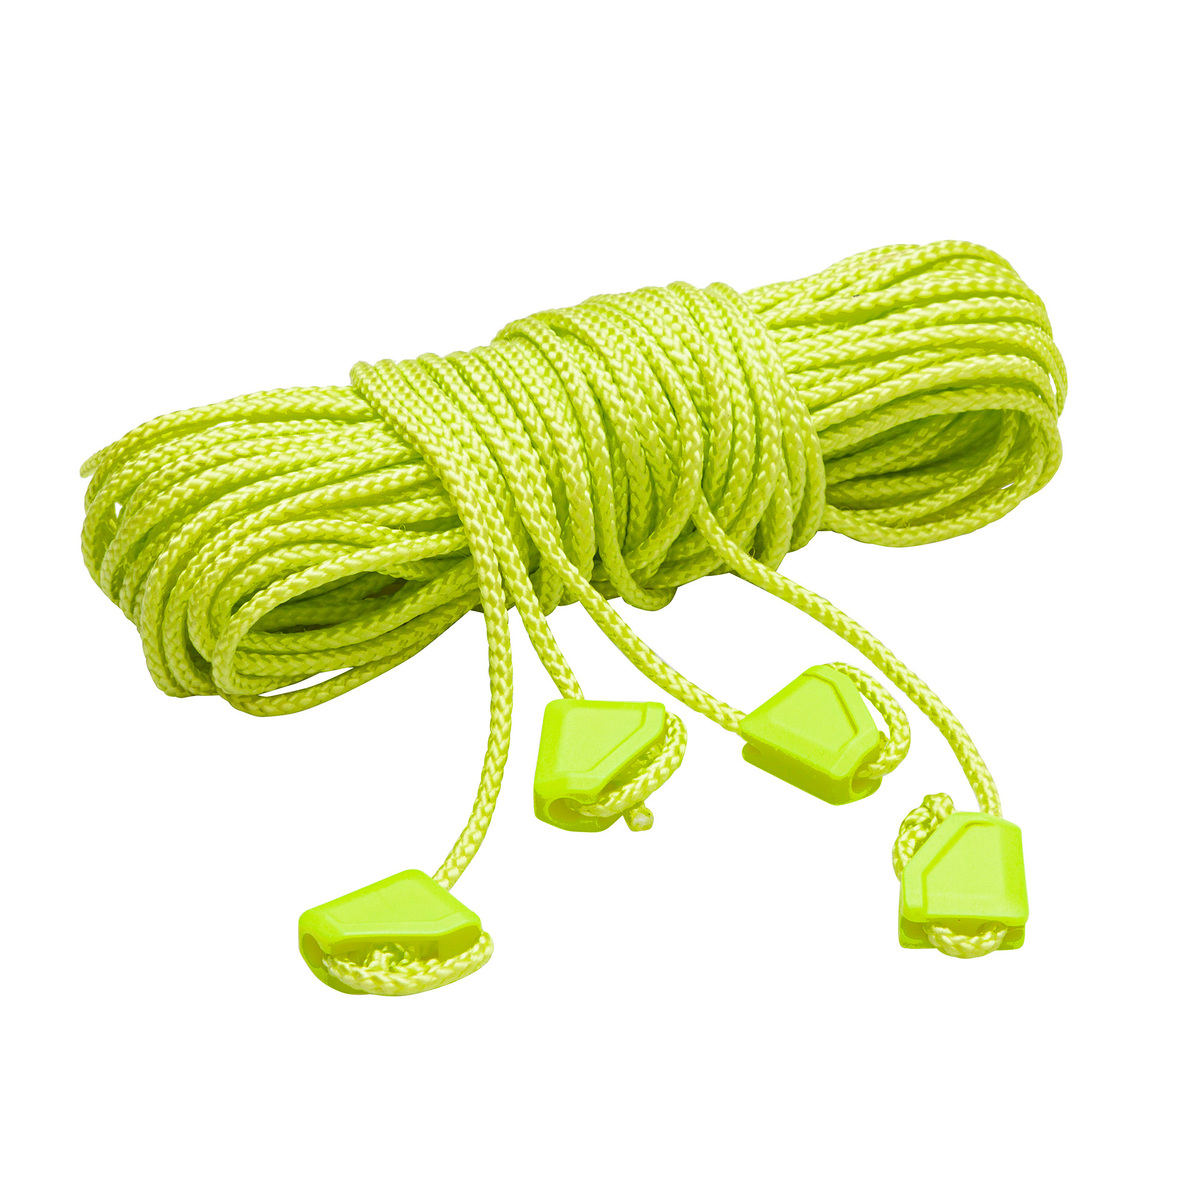 Abspannleine 4x4m Guy rope - Tent- & Tarp Accessories